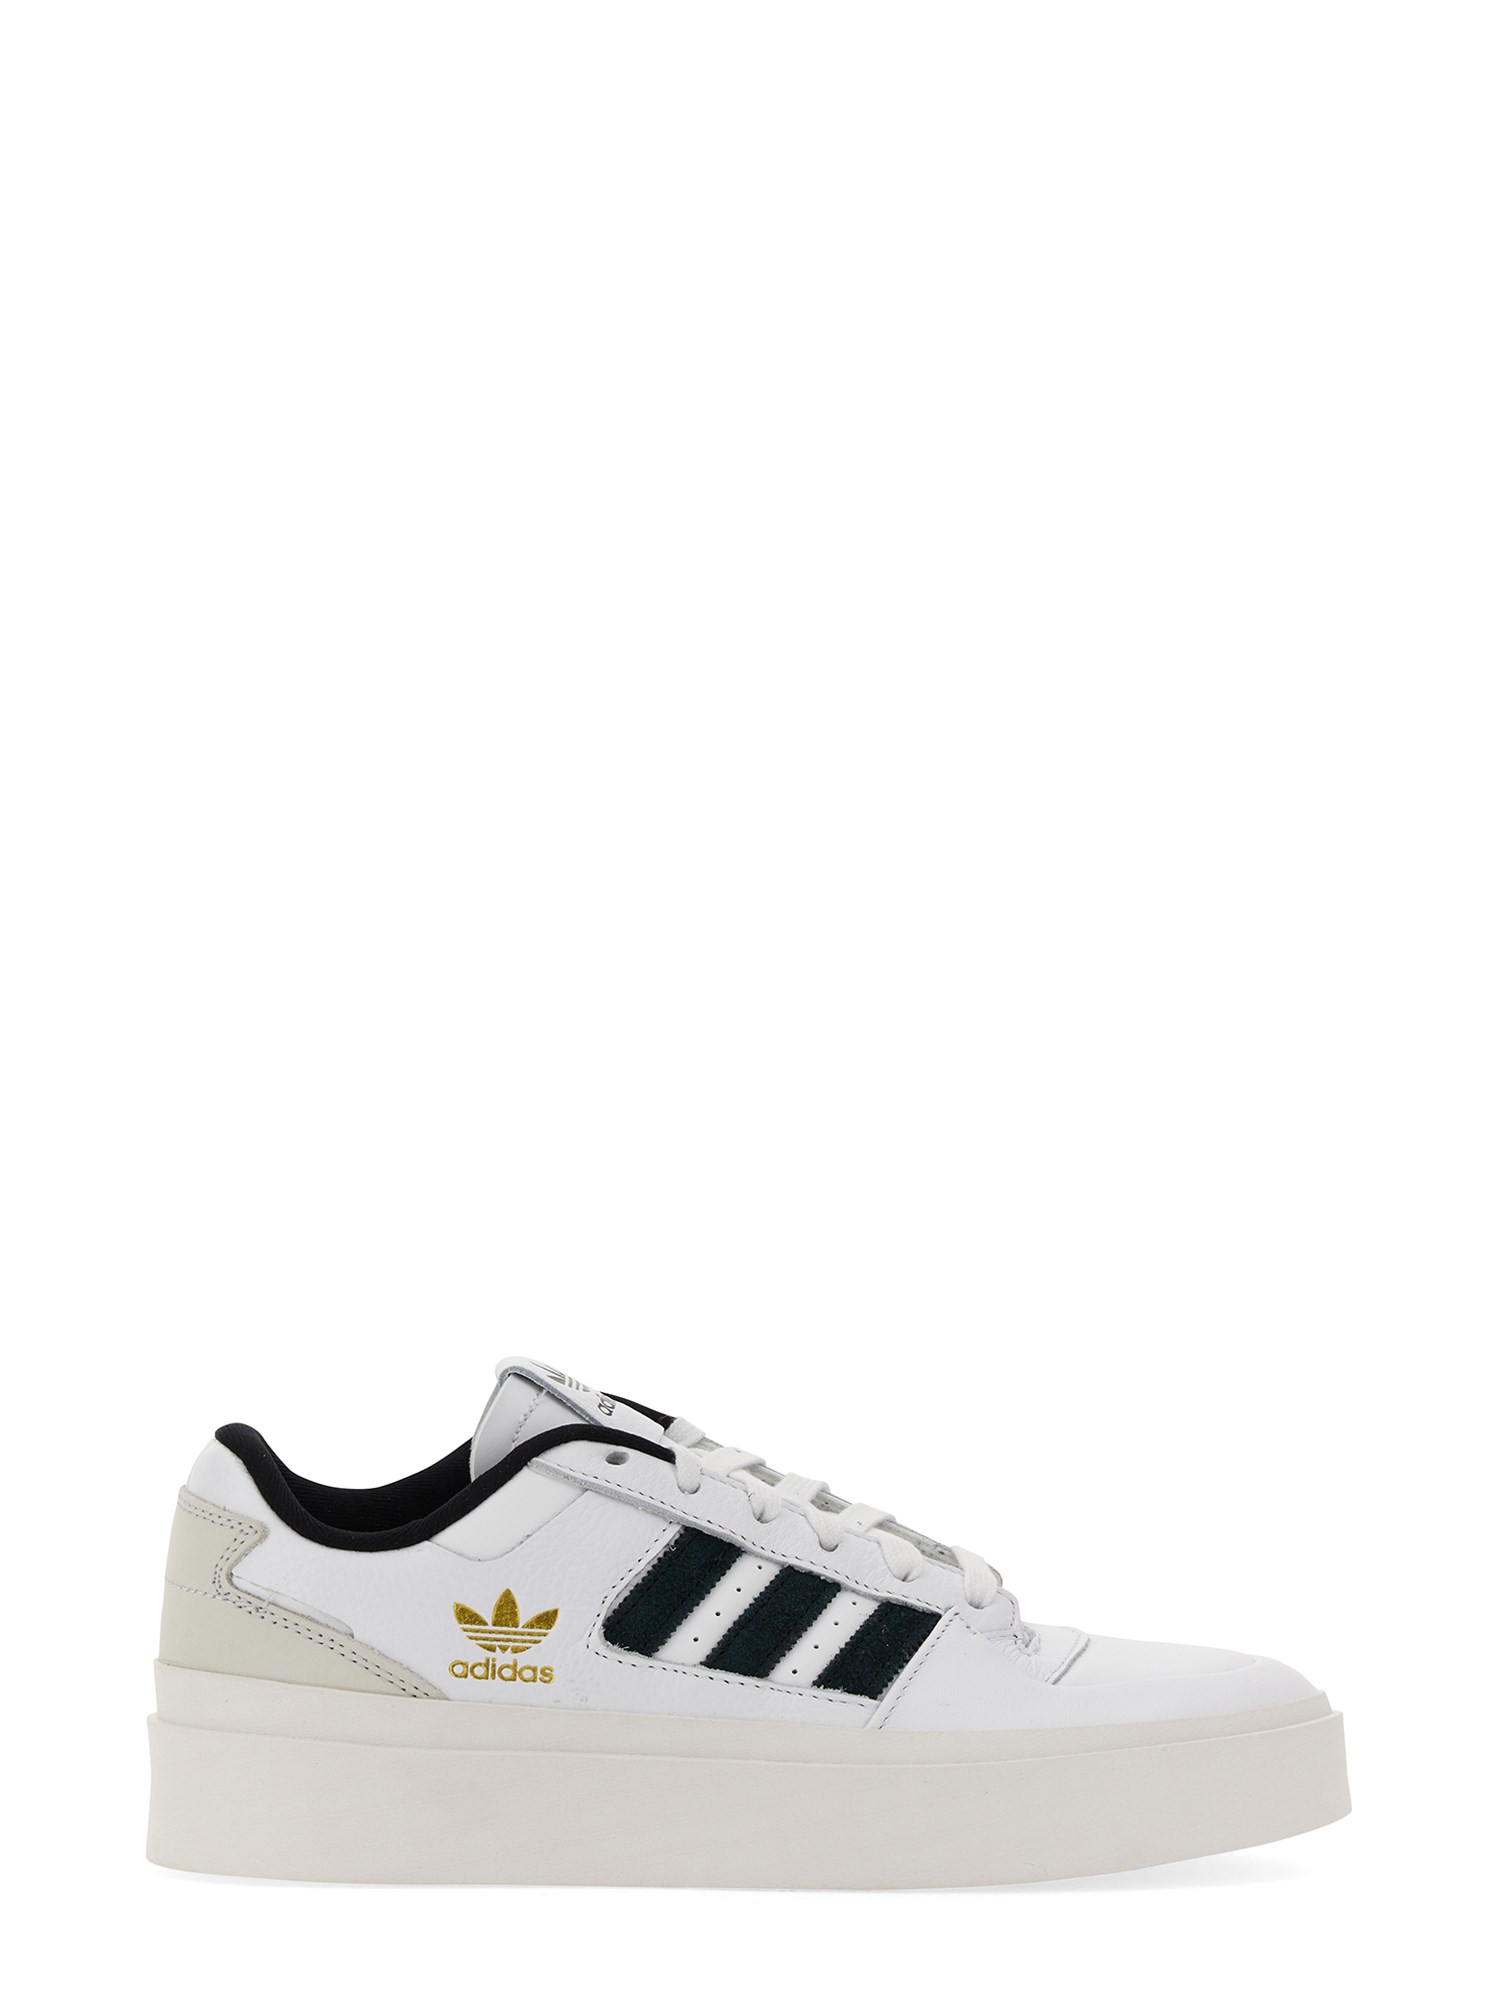 Adidas Originals In White